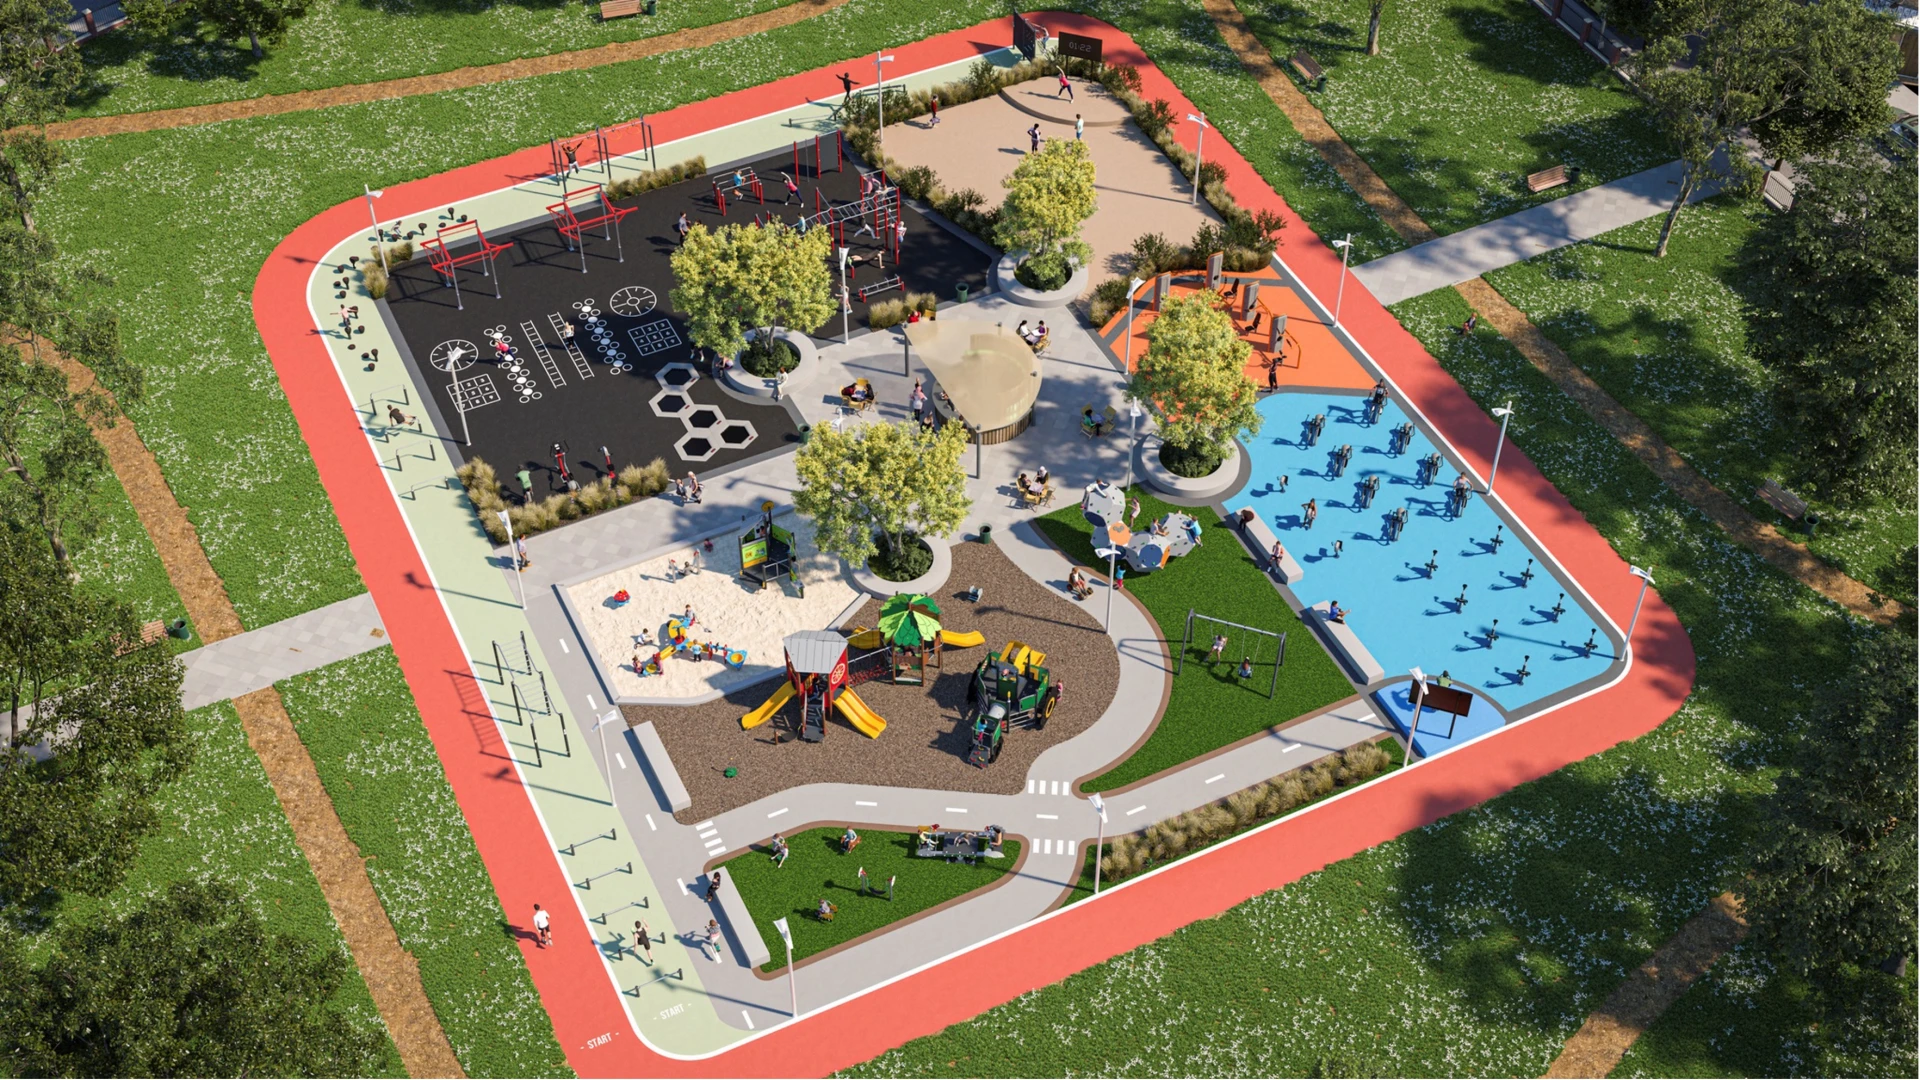 Et luftfoto af en legeplads og et udendørs fitnesscenter i en park.